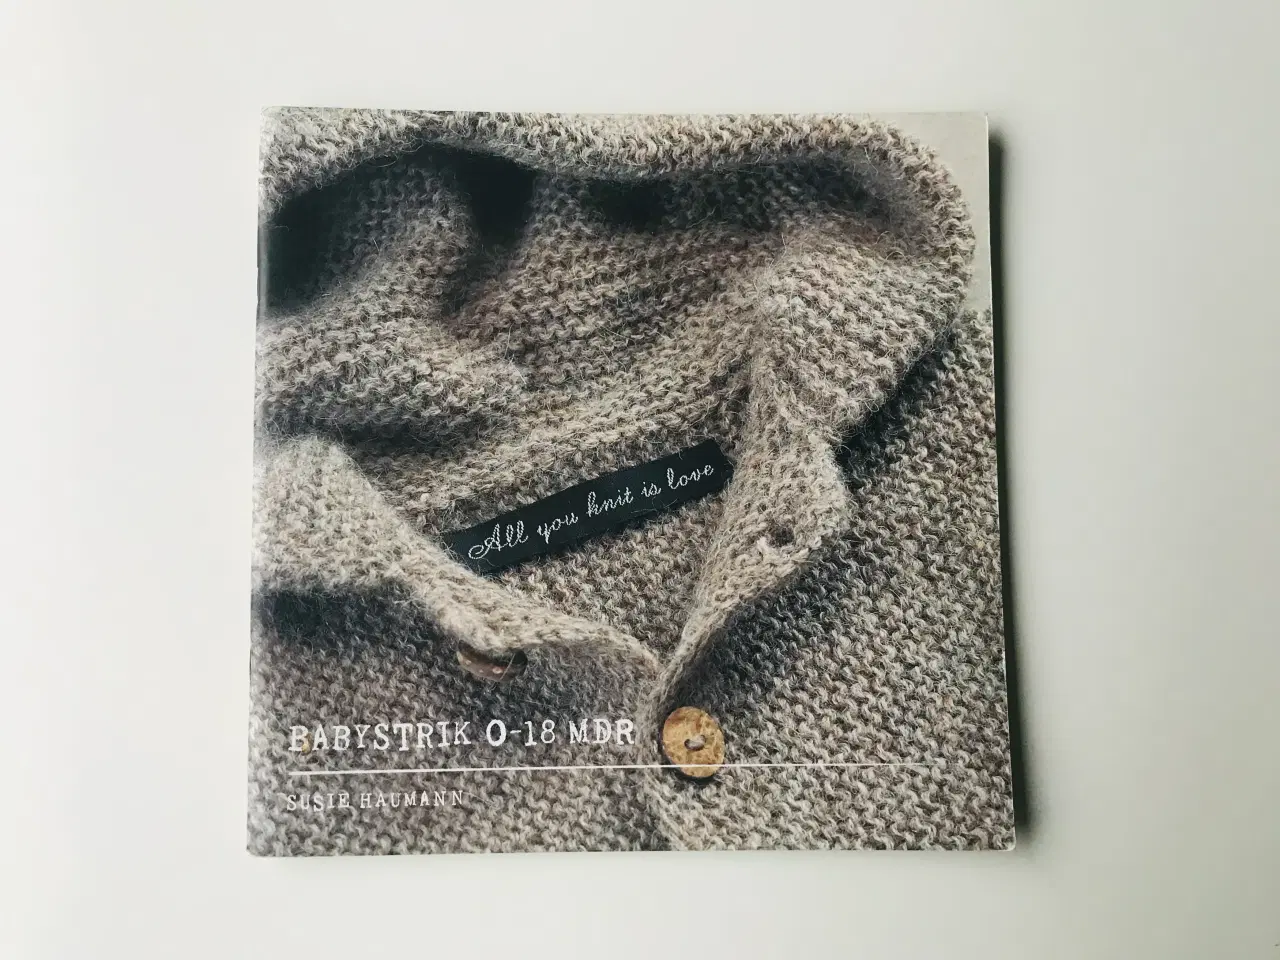 Billede 1 - All you knit is love  Babystrik 0-18 mdr.